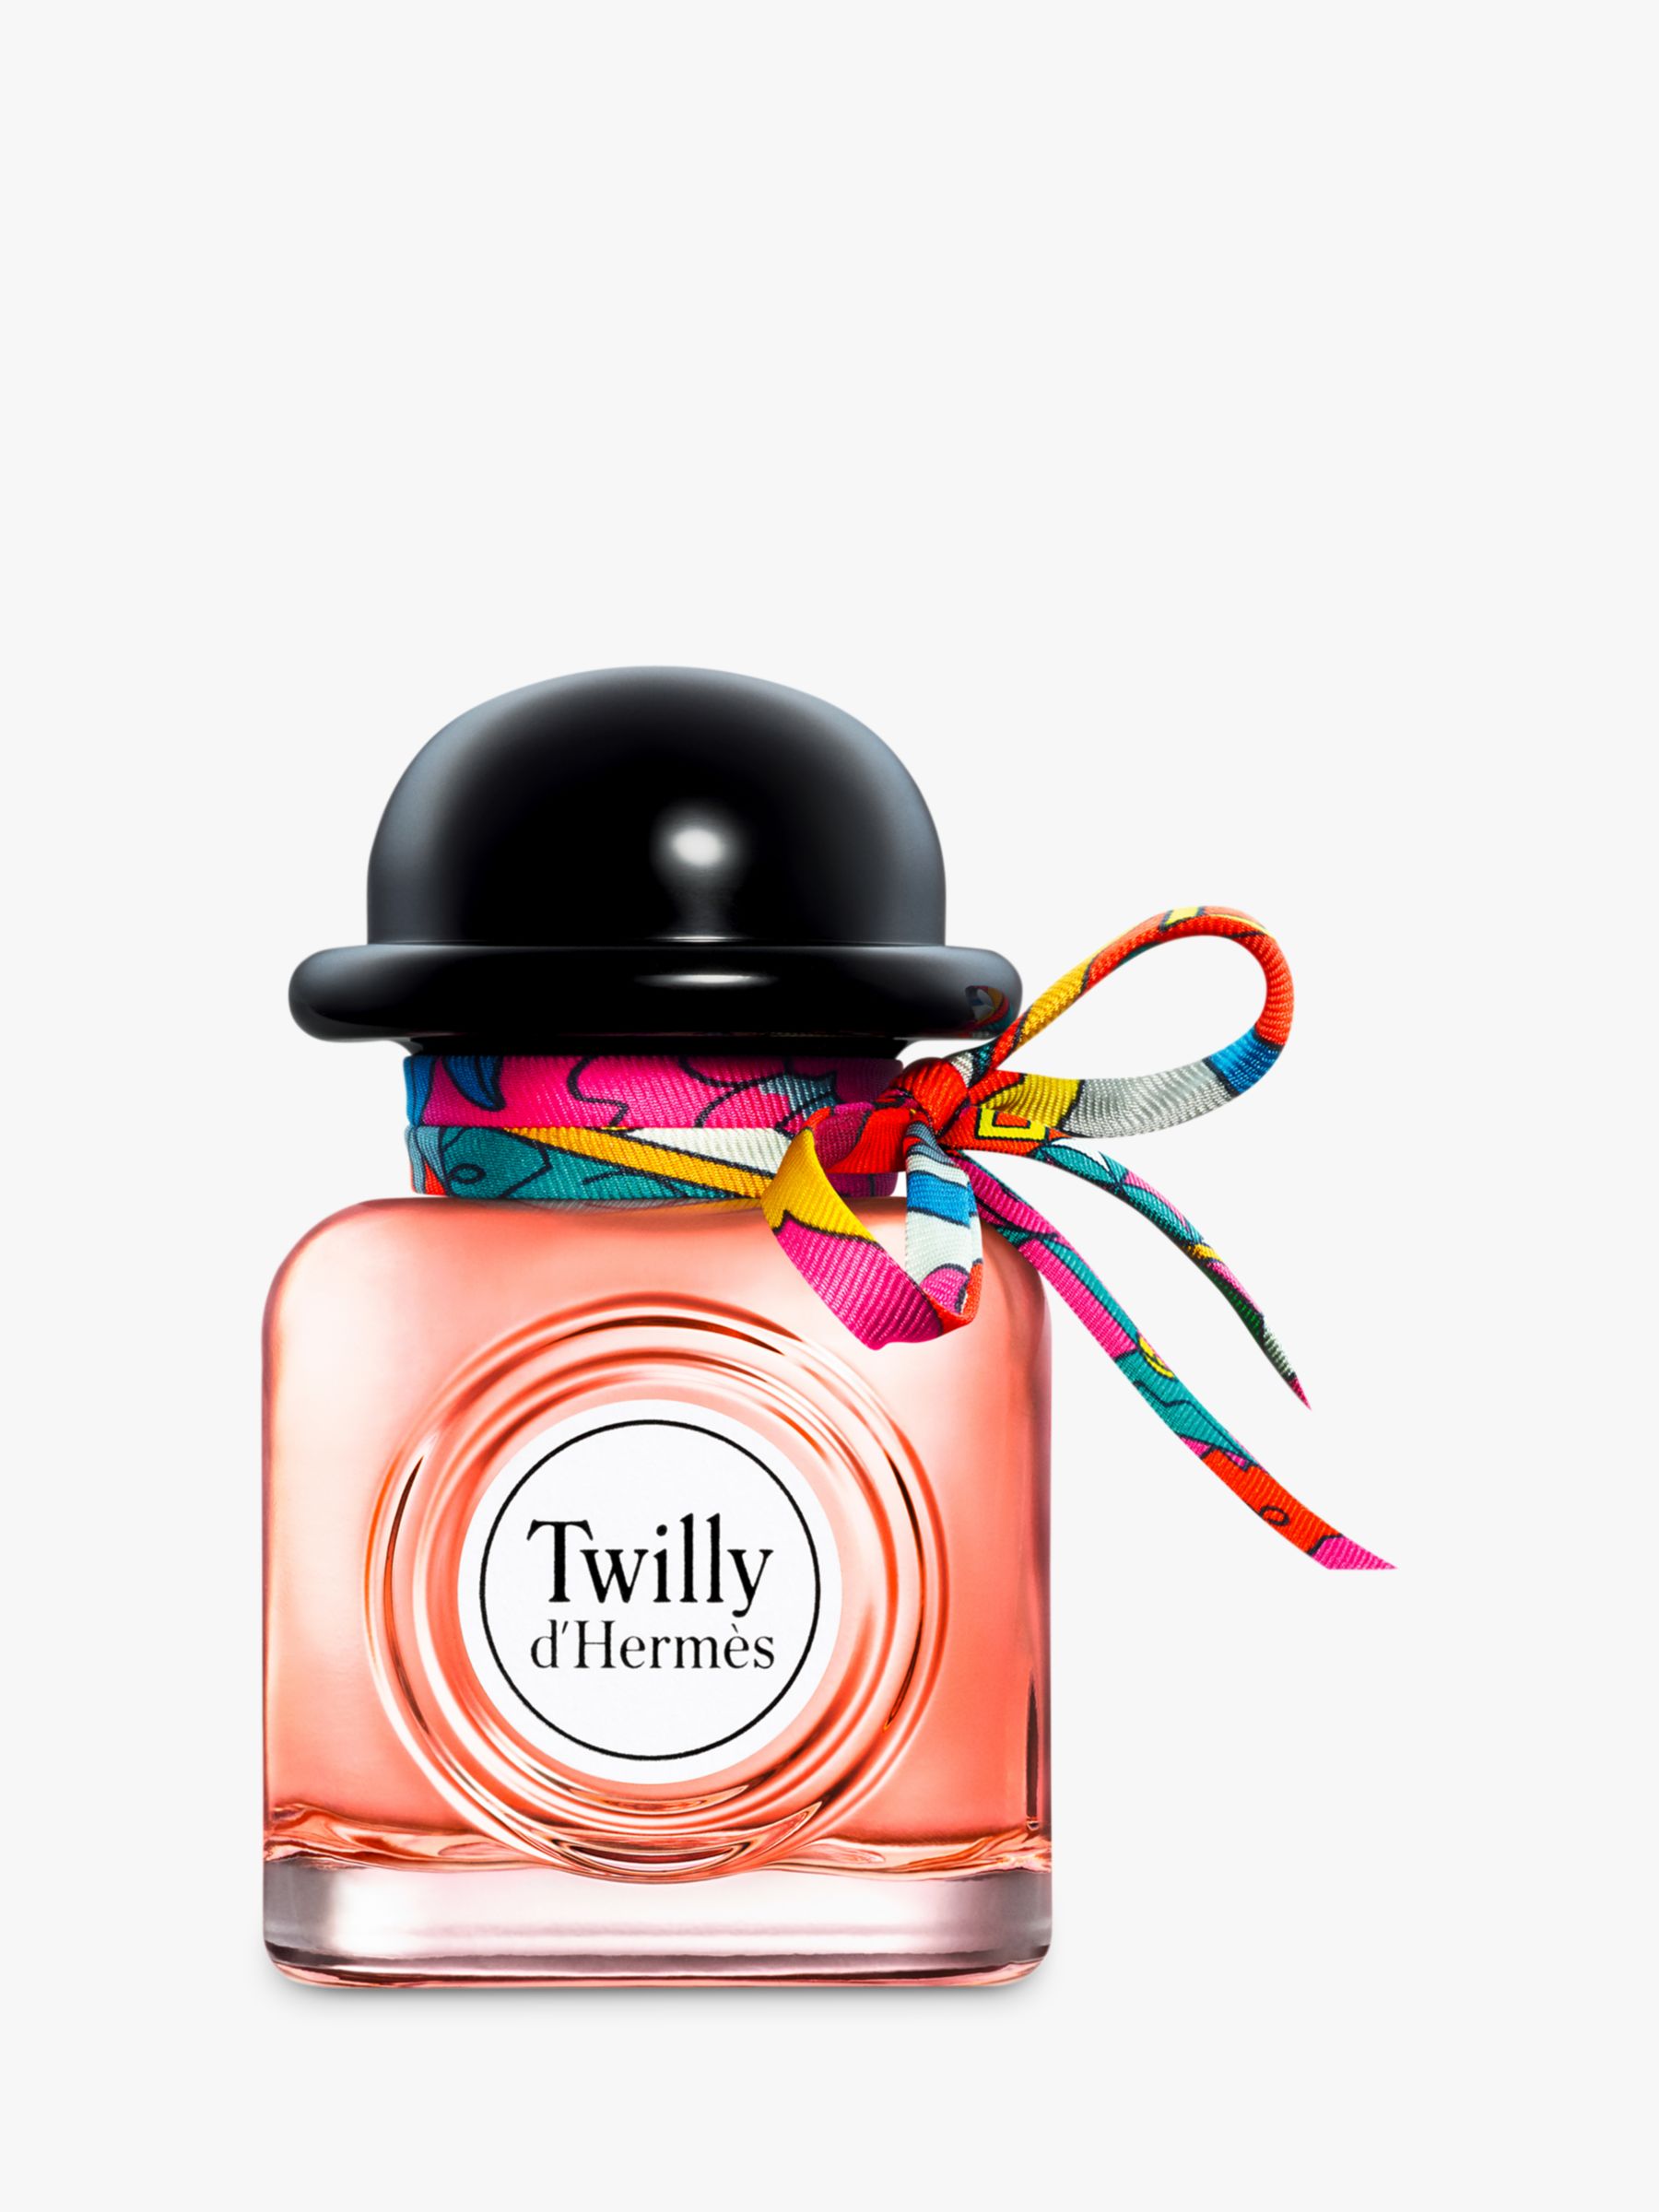 Hermès Twilly d'Hermès Eau de Parfum, 30ml